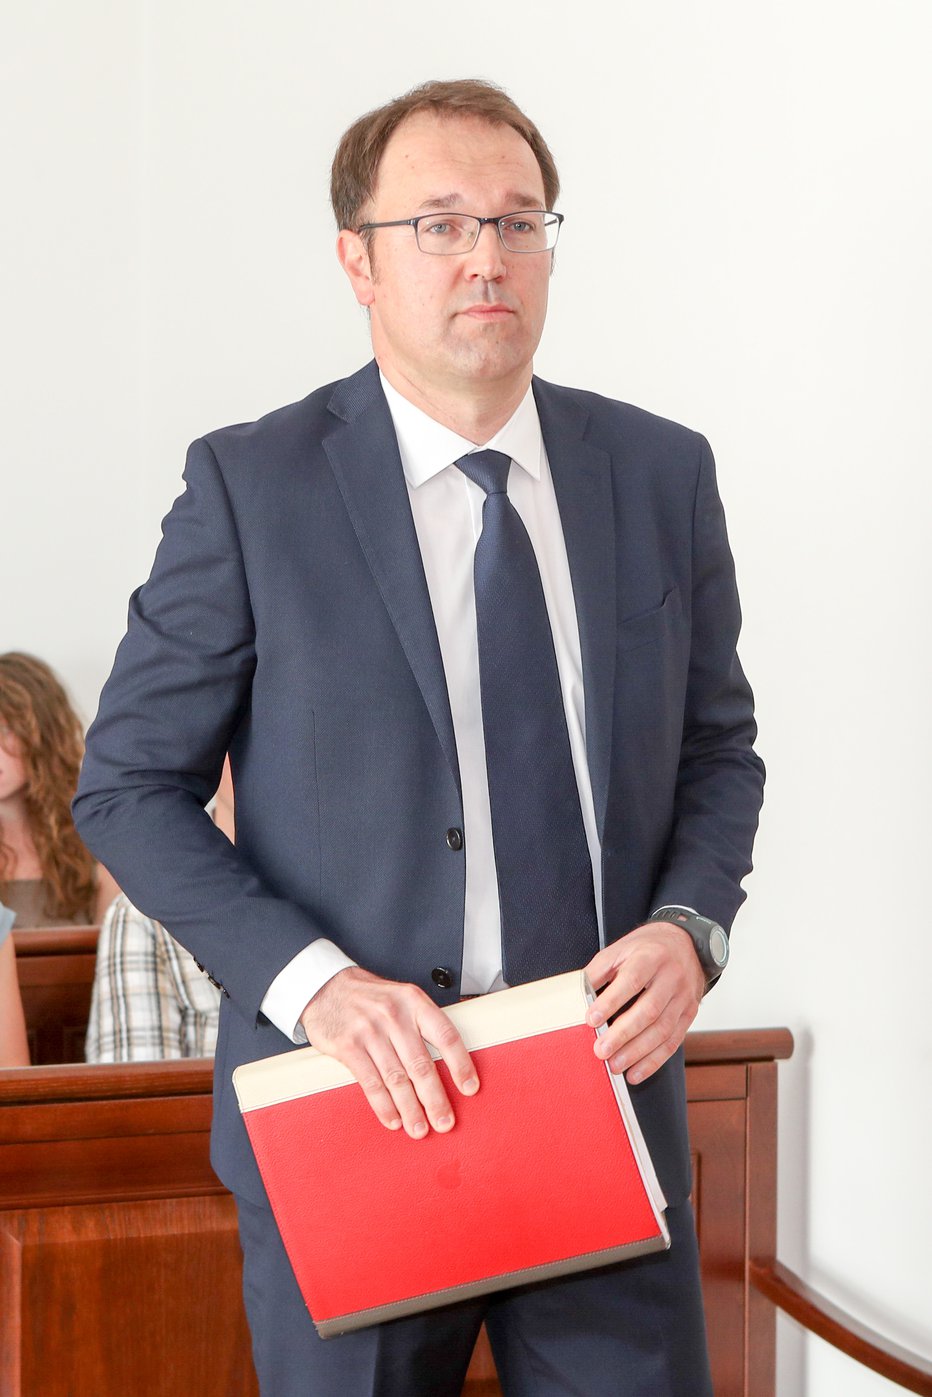 Fotografija: Damjan Birtič je obtožen kaznivega dejanja malomarnega zdravljenja in opravljanja zdravilske dejavnosti. Foto: Marko Feist